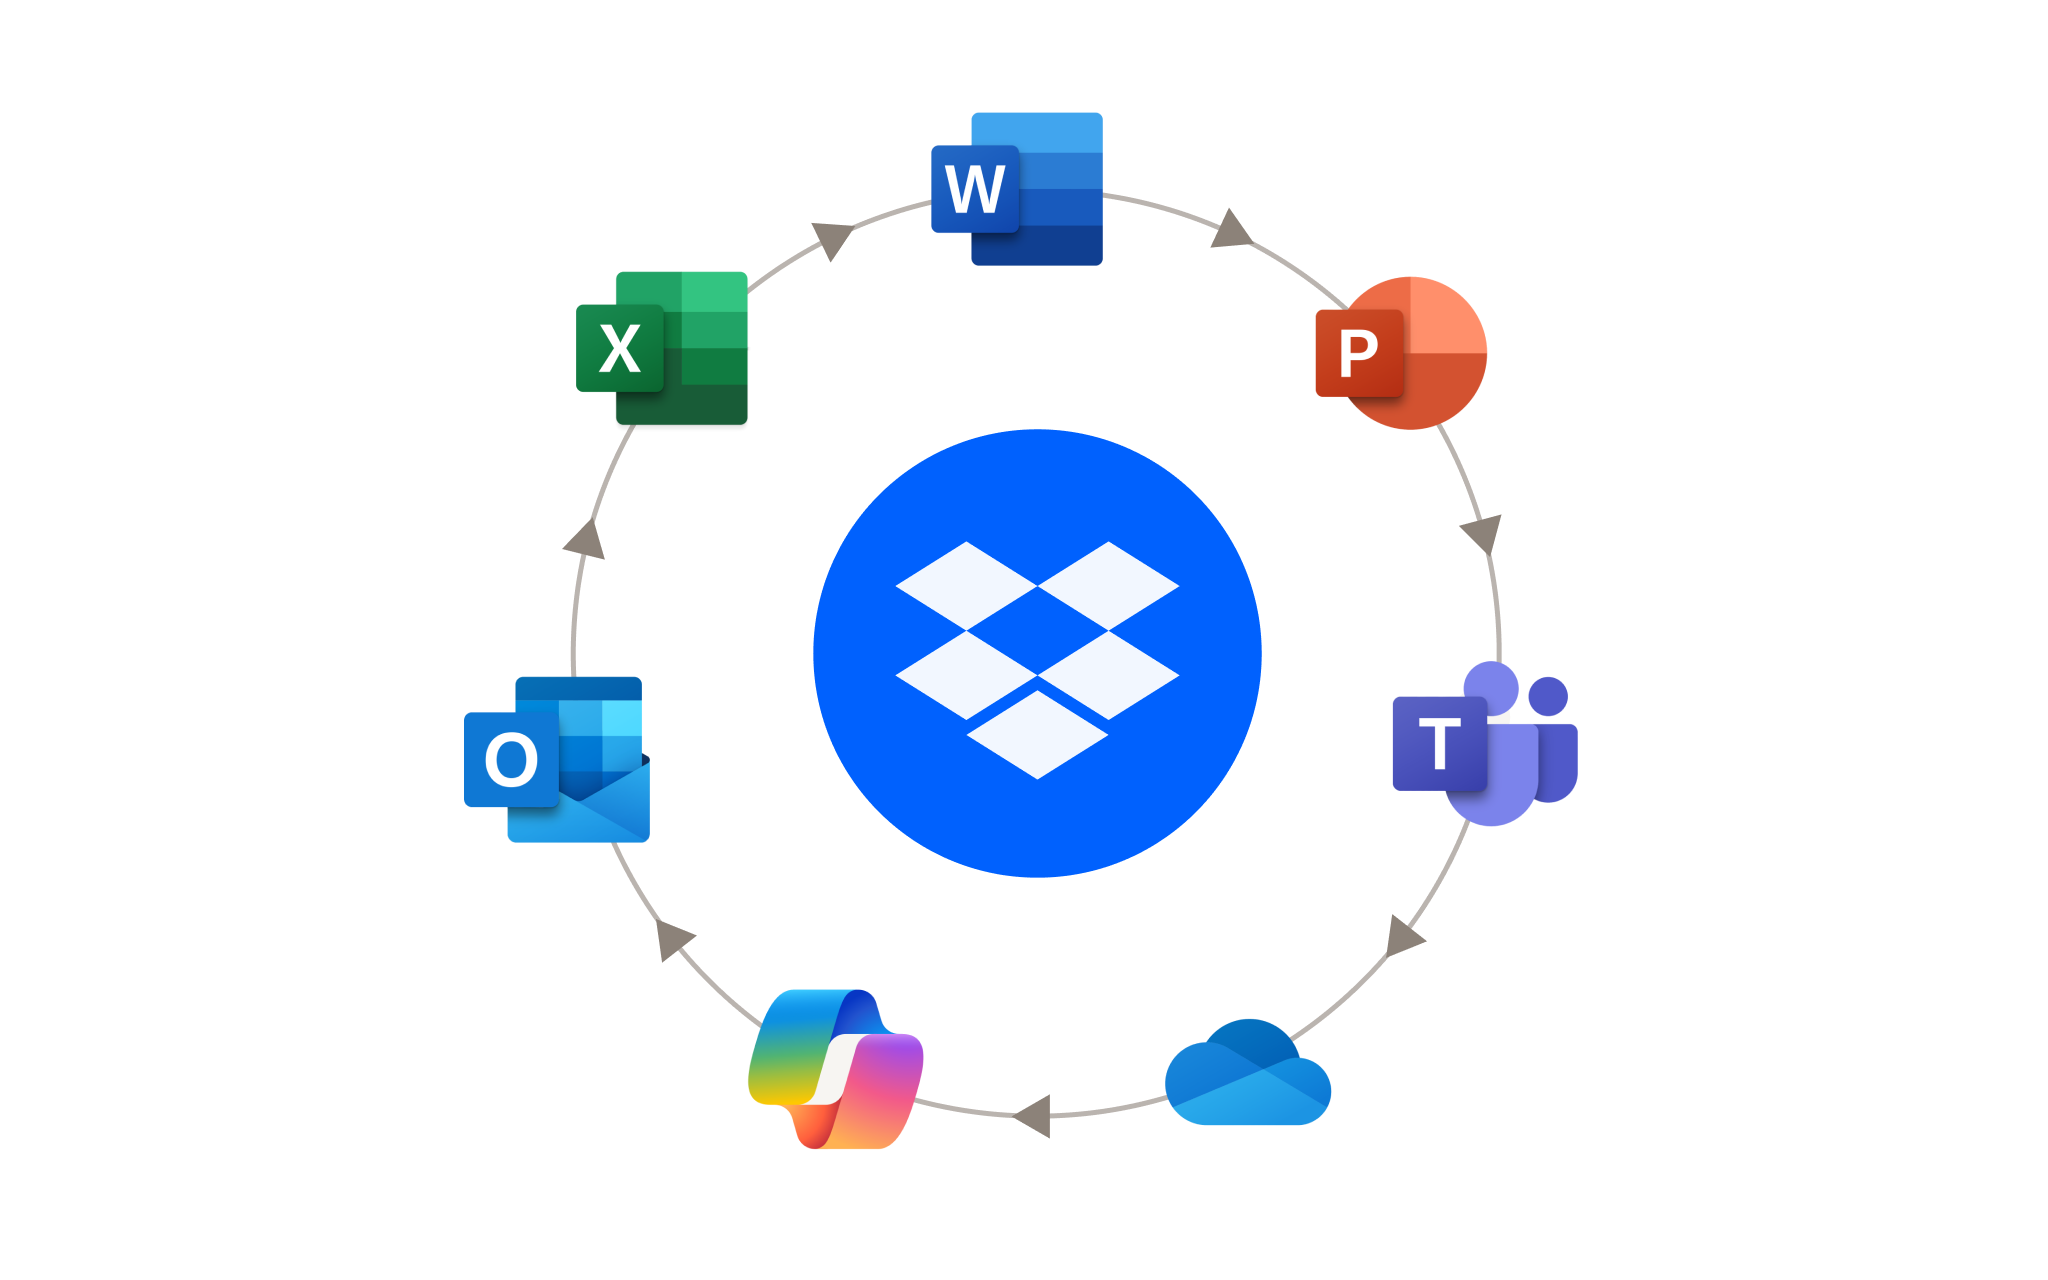 Komplet logo for Dropbox sammen med forskellige logoer for Microsoft-produkter.